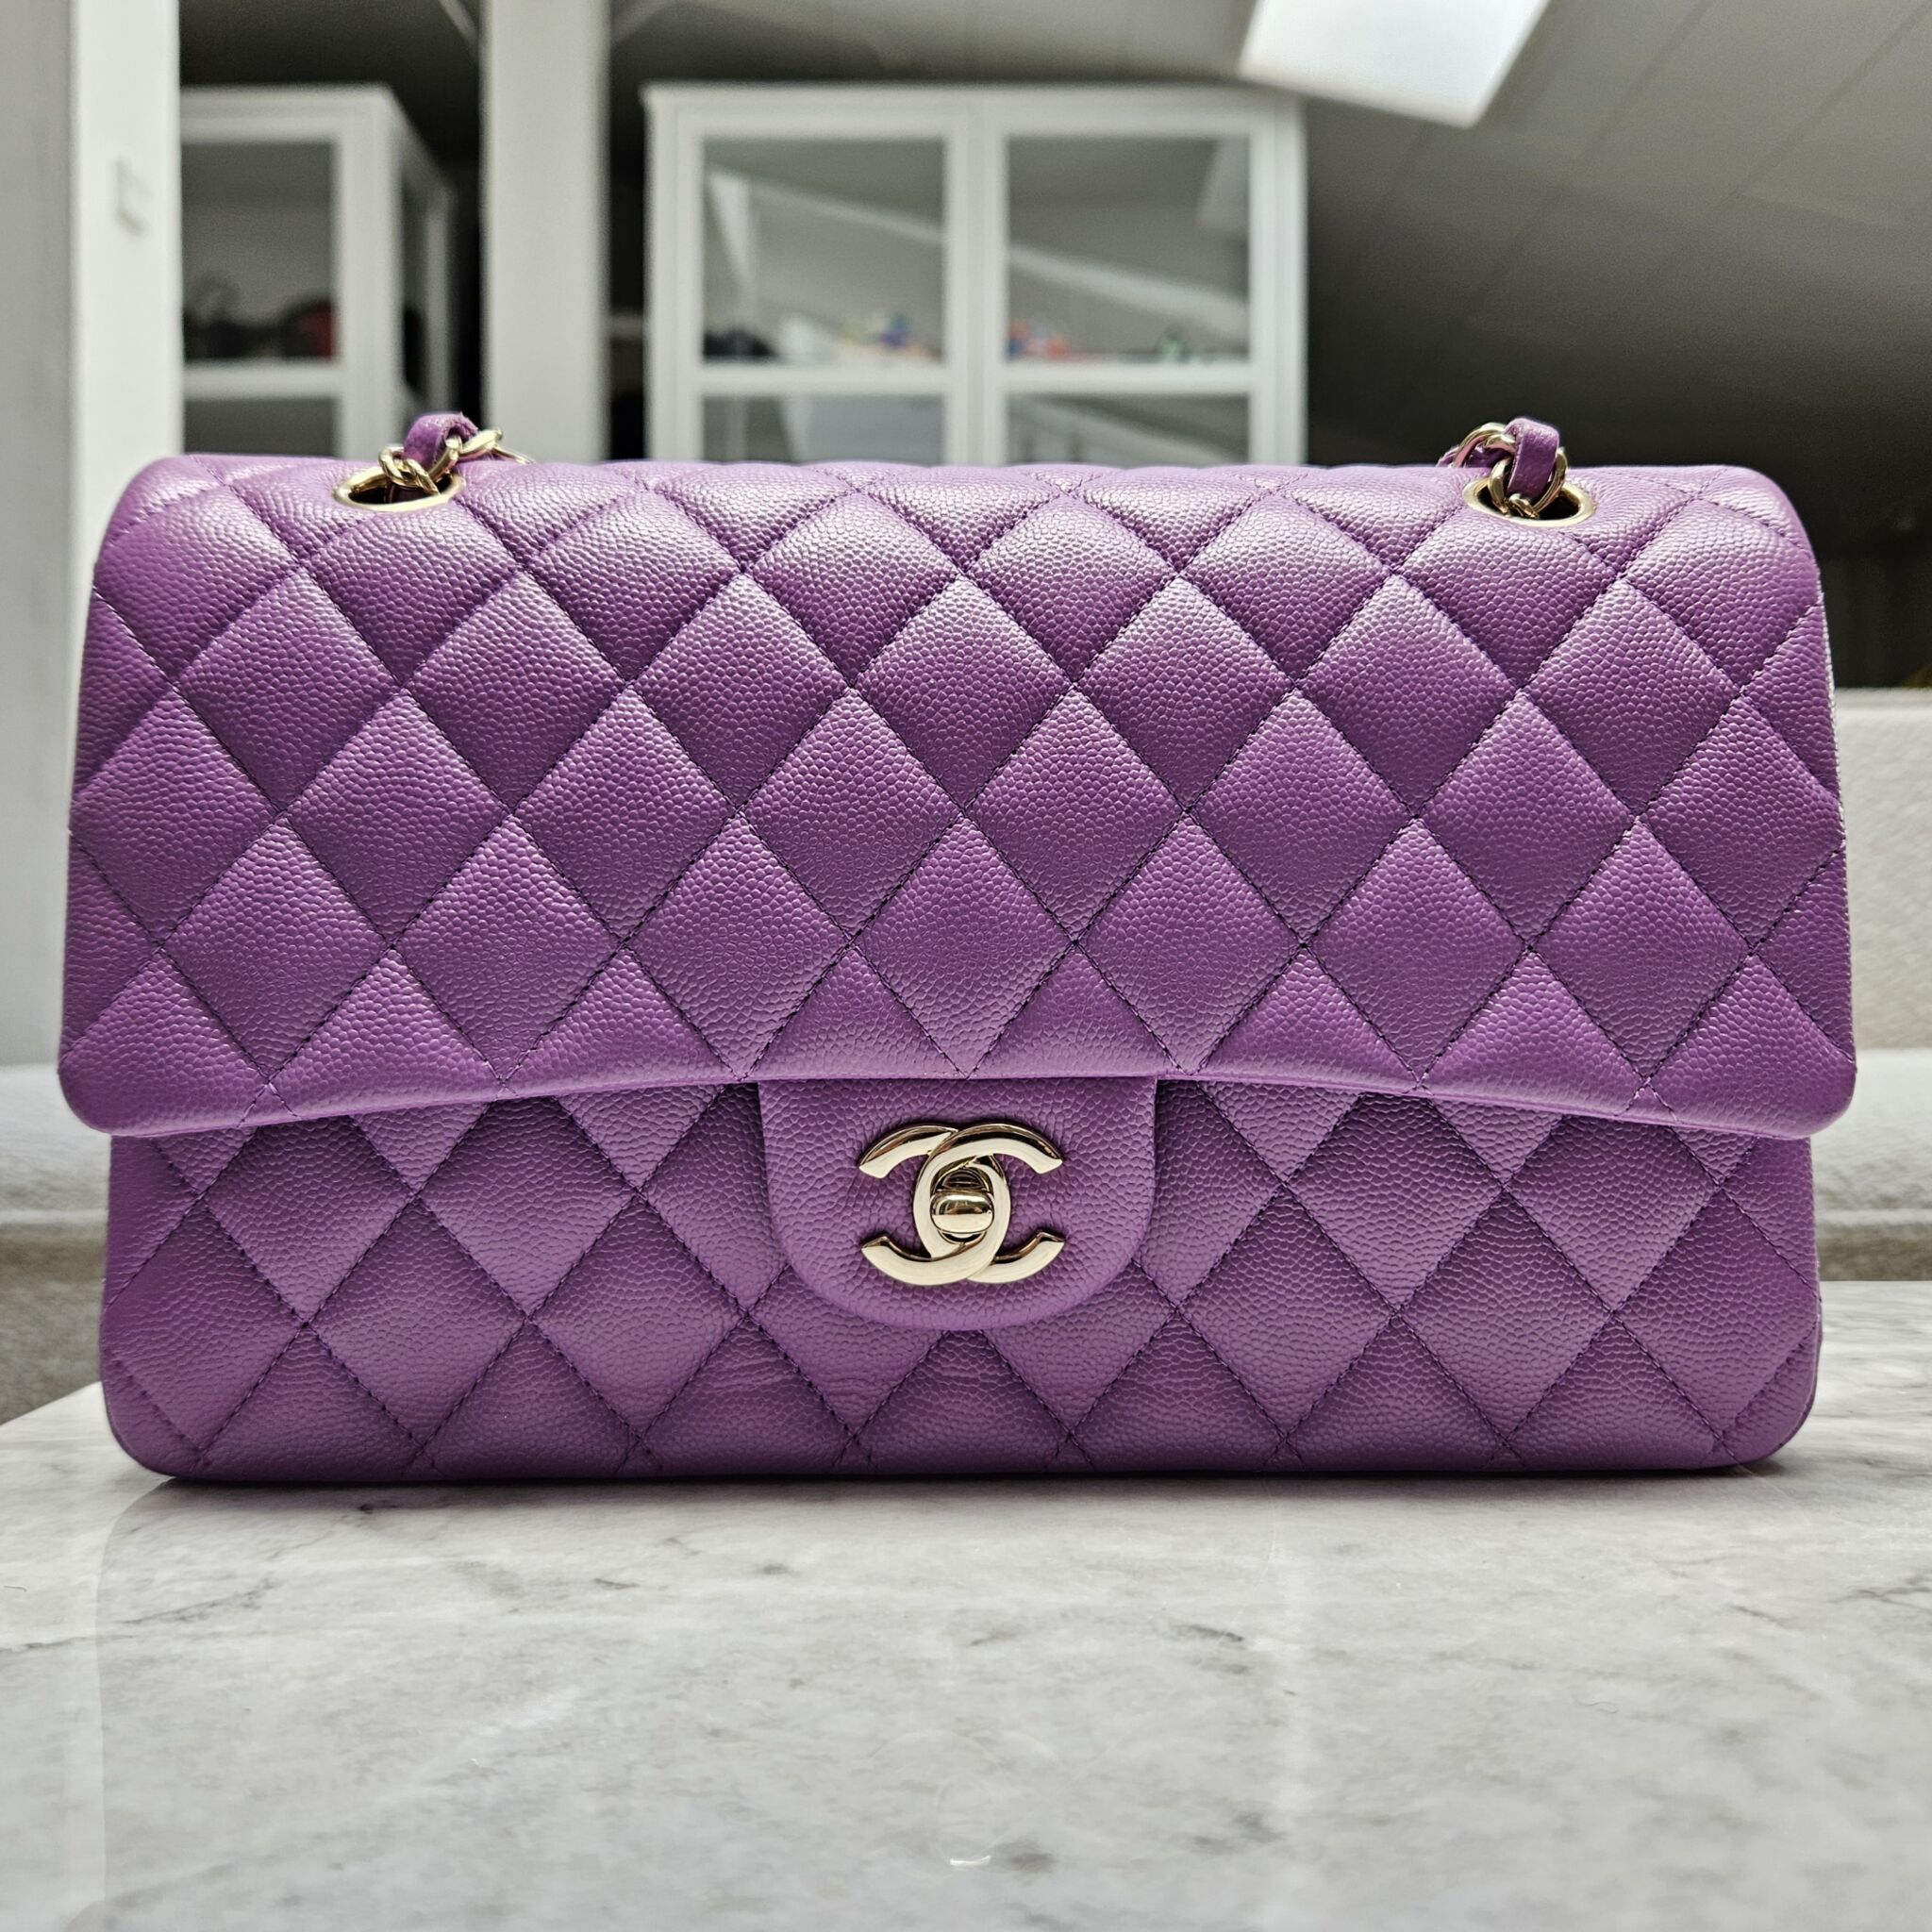 Chanel Medium Classic Flap, Caviar, Beige SHW - Laulay Luxury